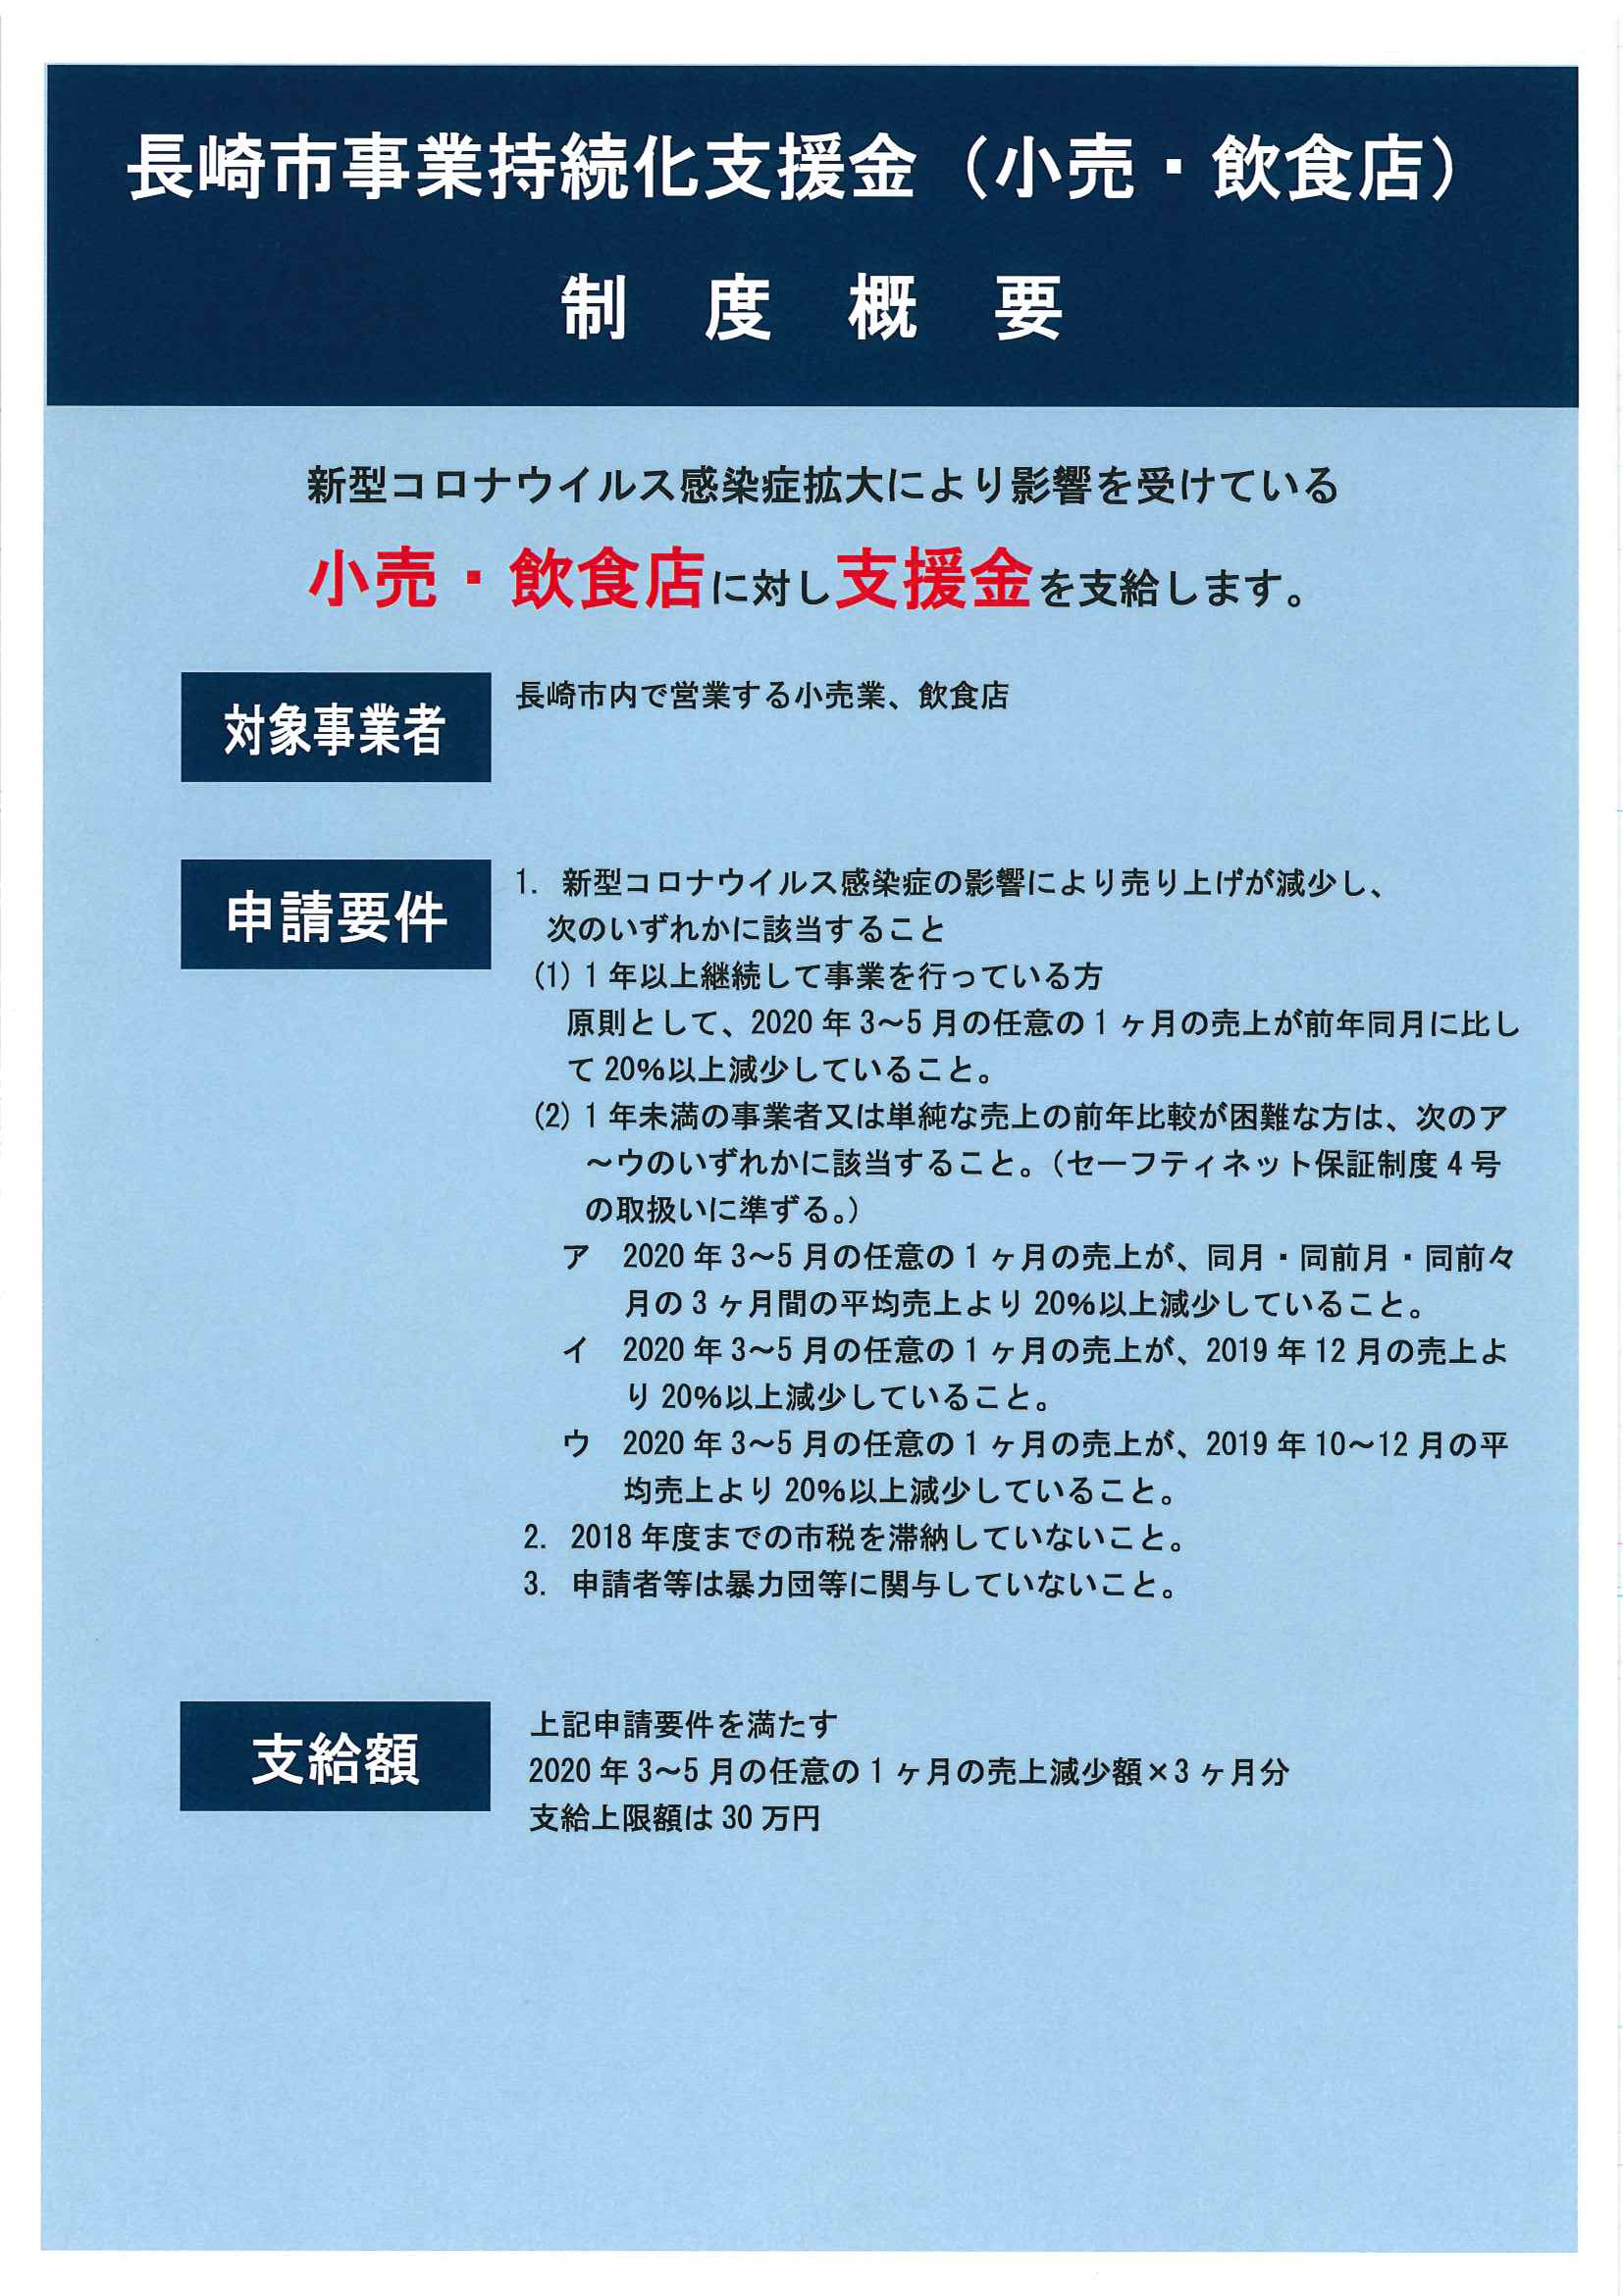 長崎市事業持続化支援金申請が始まりました。